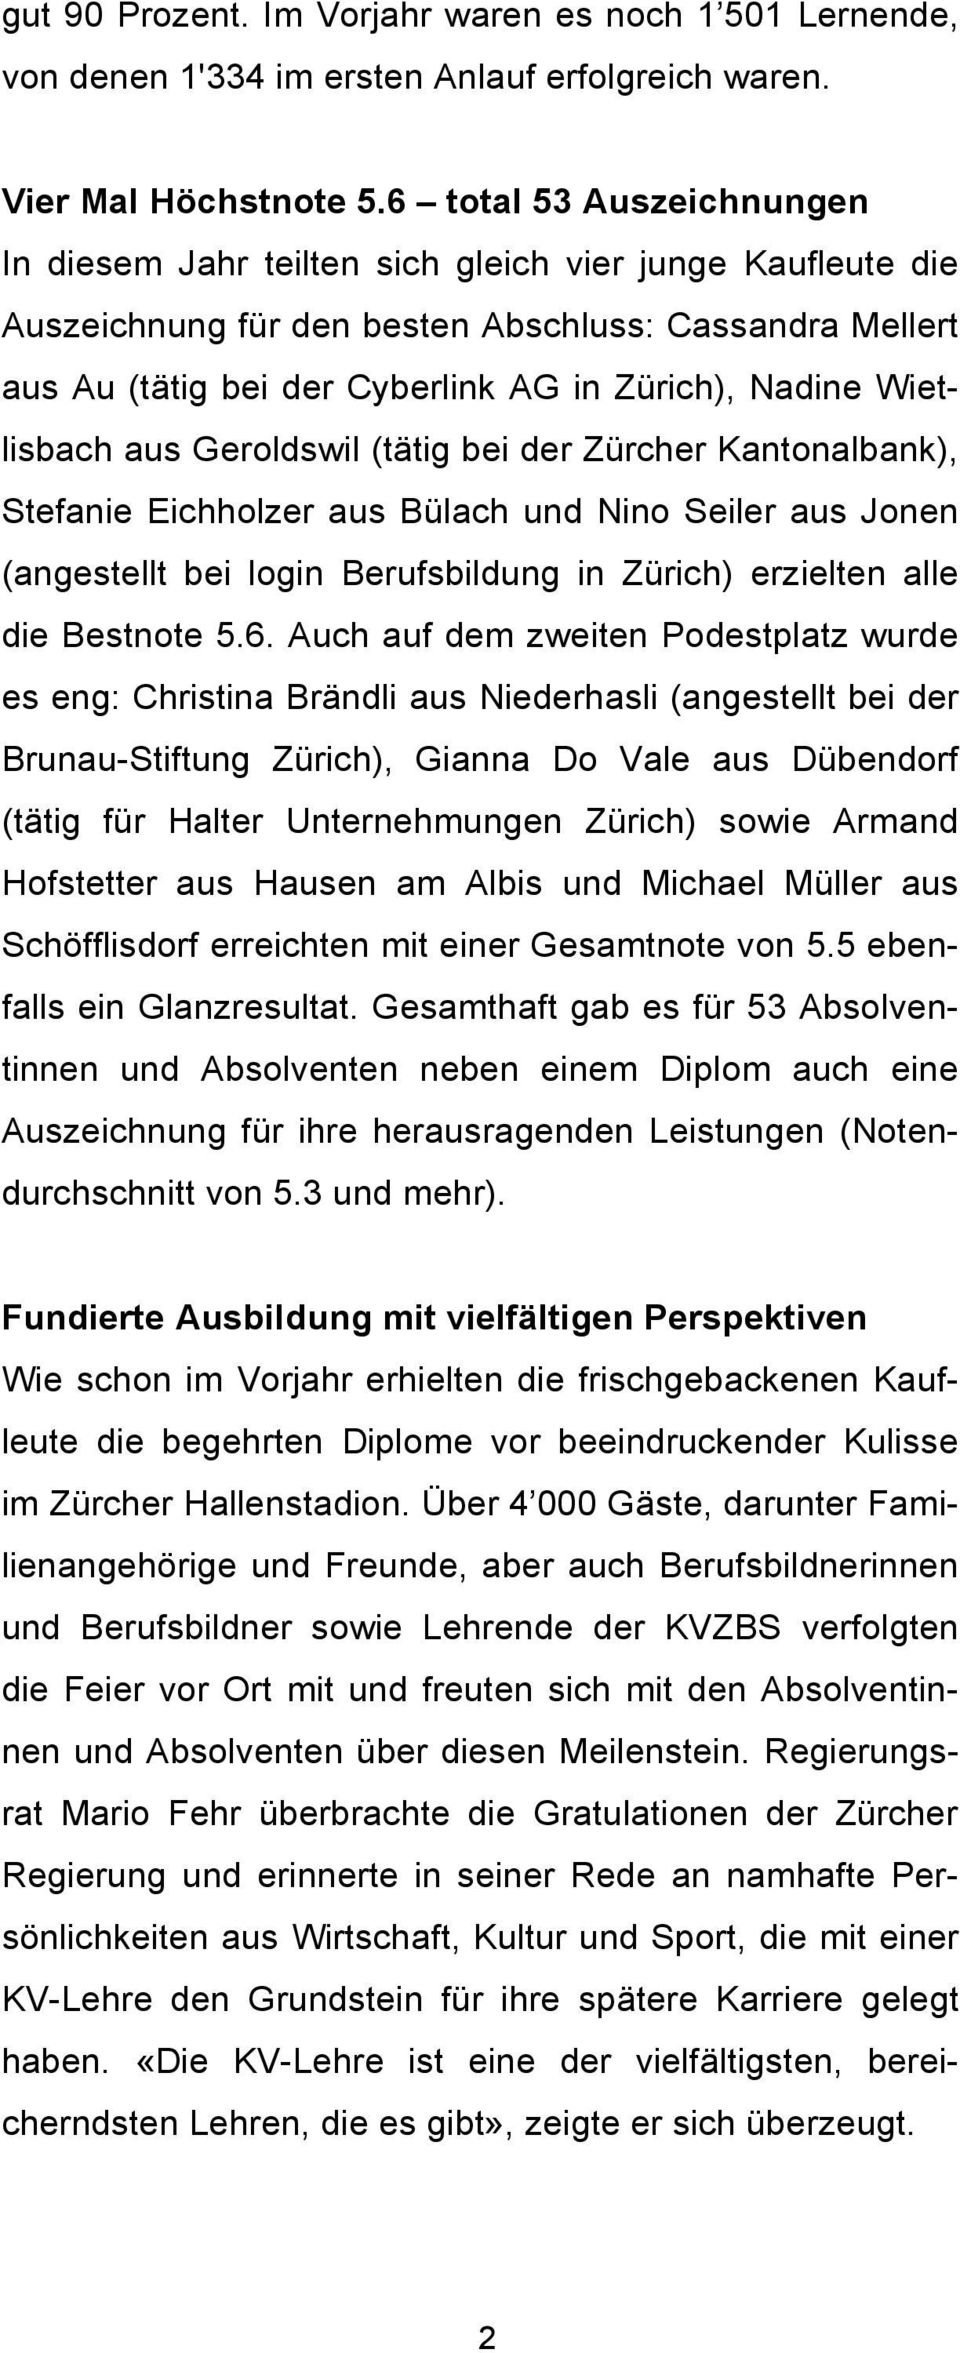 Wietlisbach aus Geroldswil (tätig bei der Zürcher Kantonalbank), Stefanie Eichholzer aus Bülach und Nino Seiler aus Jonen (angestellt bei login Berufsbildung in Zürich) erzielten alle die Bestnote 5.